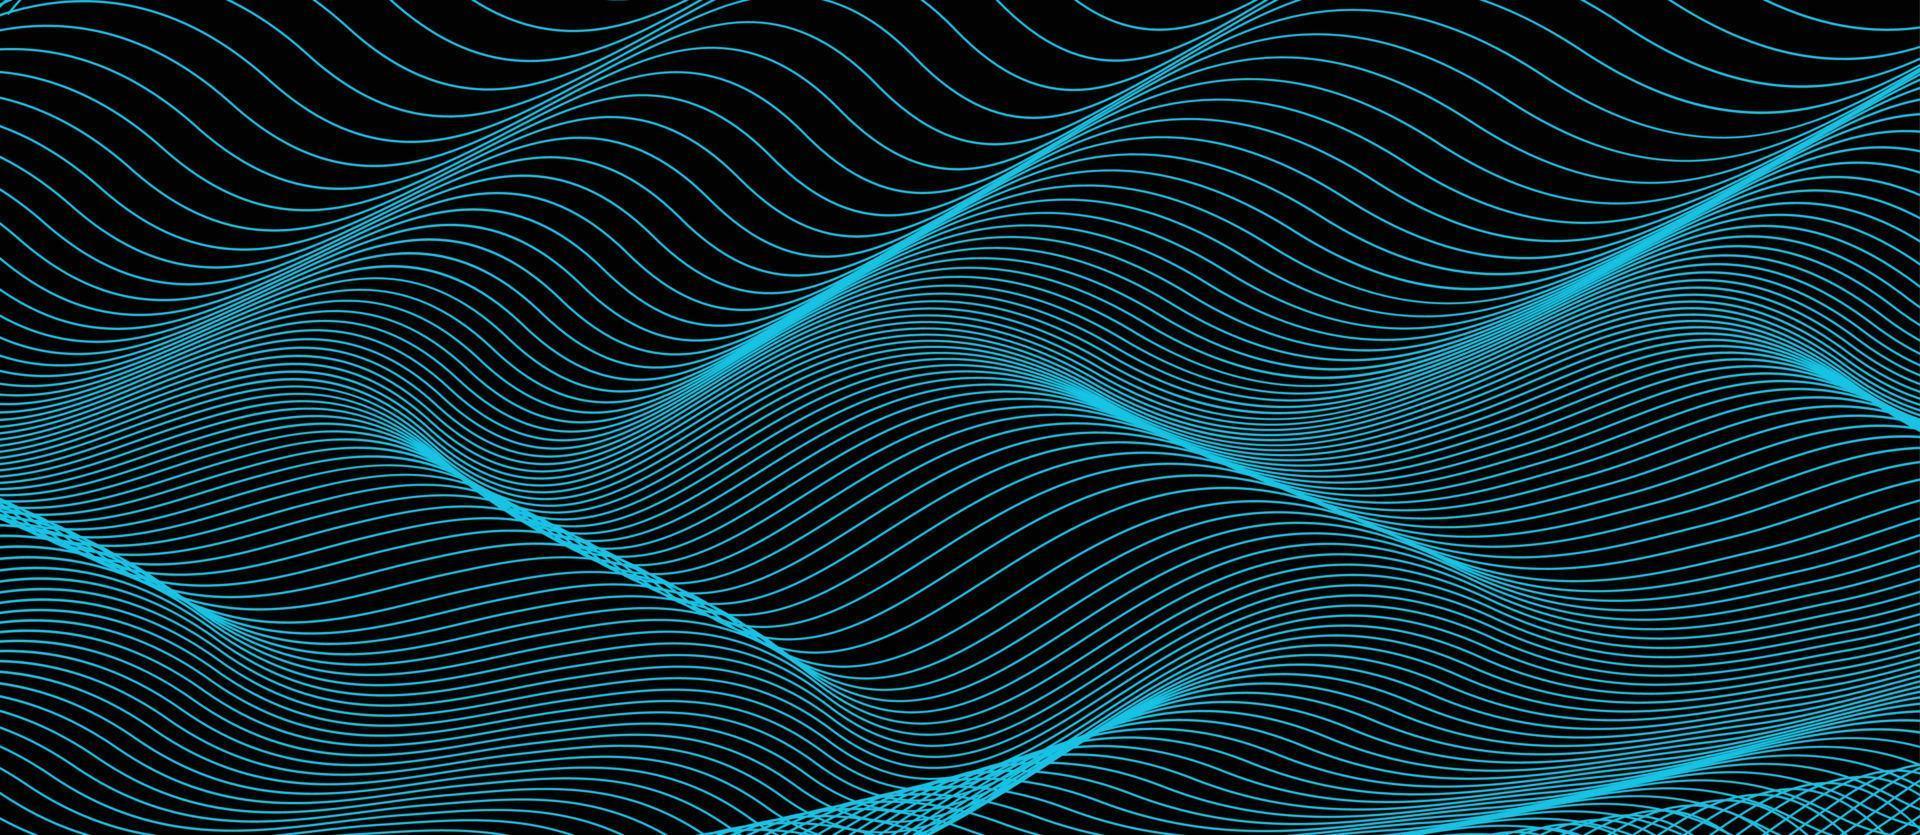 fondo verde azulado oscuro abstracto con onda de luz. telón de fondo de agua turquesa borrosa. ilustración vectorial para su diseño gráfico vector